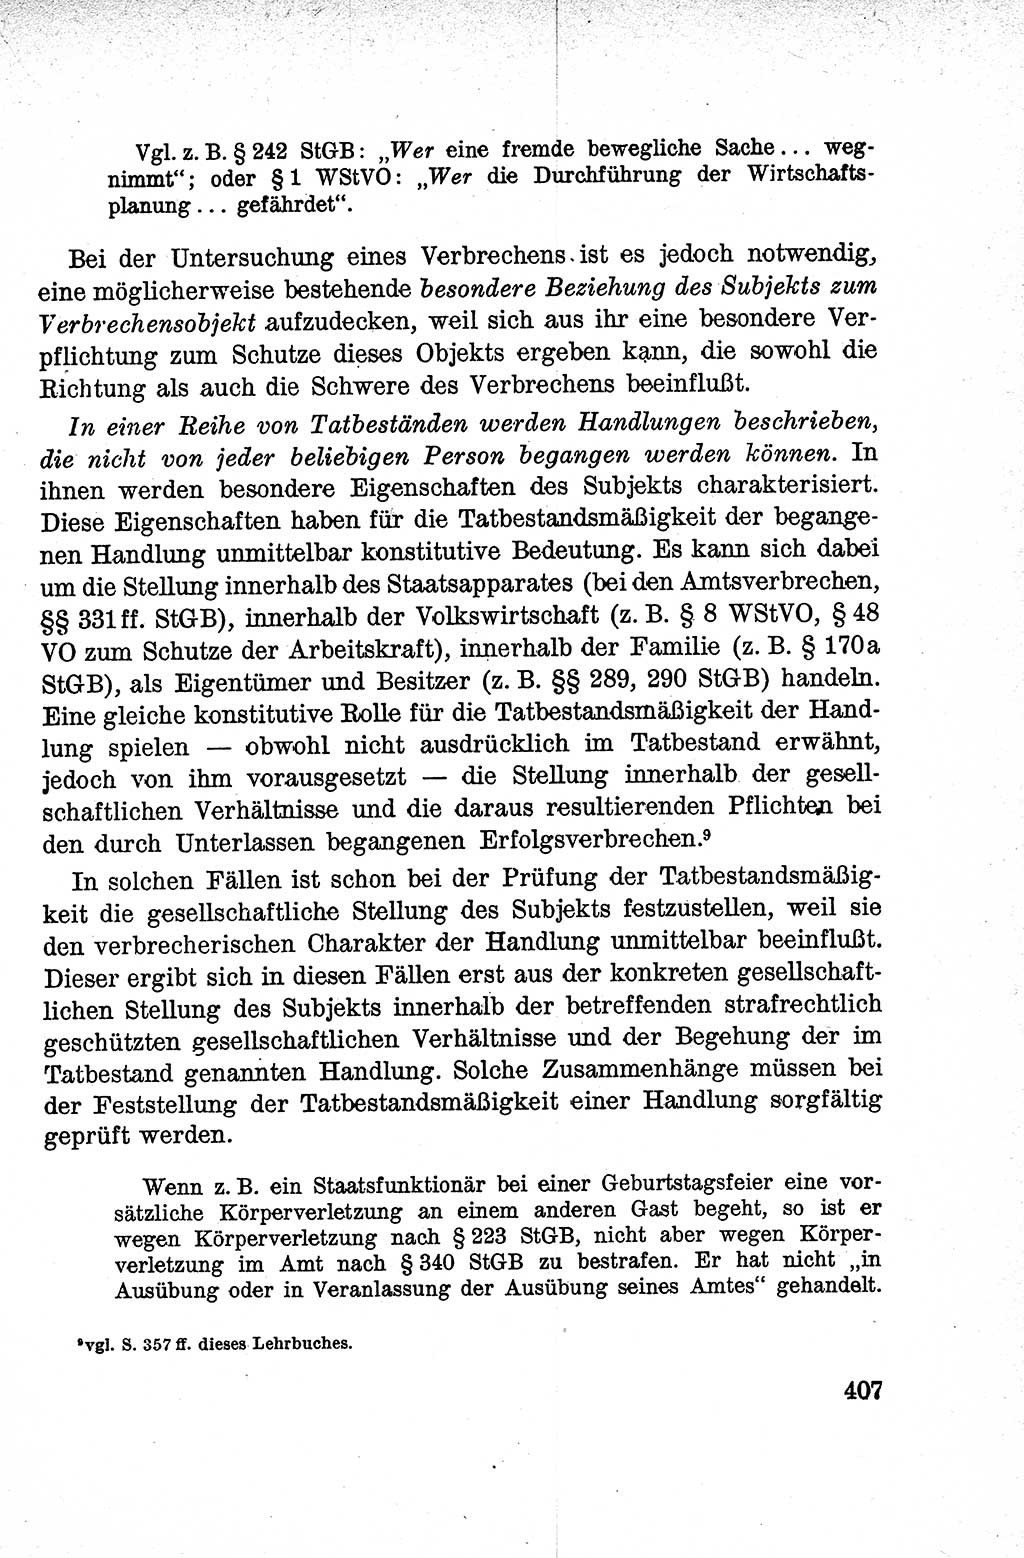 Lehrbuch des Strafrechts der Deutschen Demokratischen Republik (DDR), Allgemeiner Teil 1959, Seite 407 (Lb. Strafr. DDR AT 1959, S. 407)